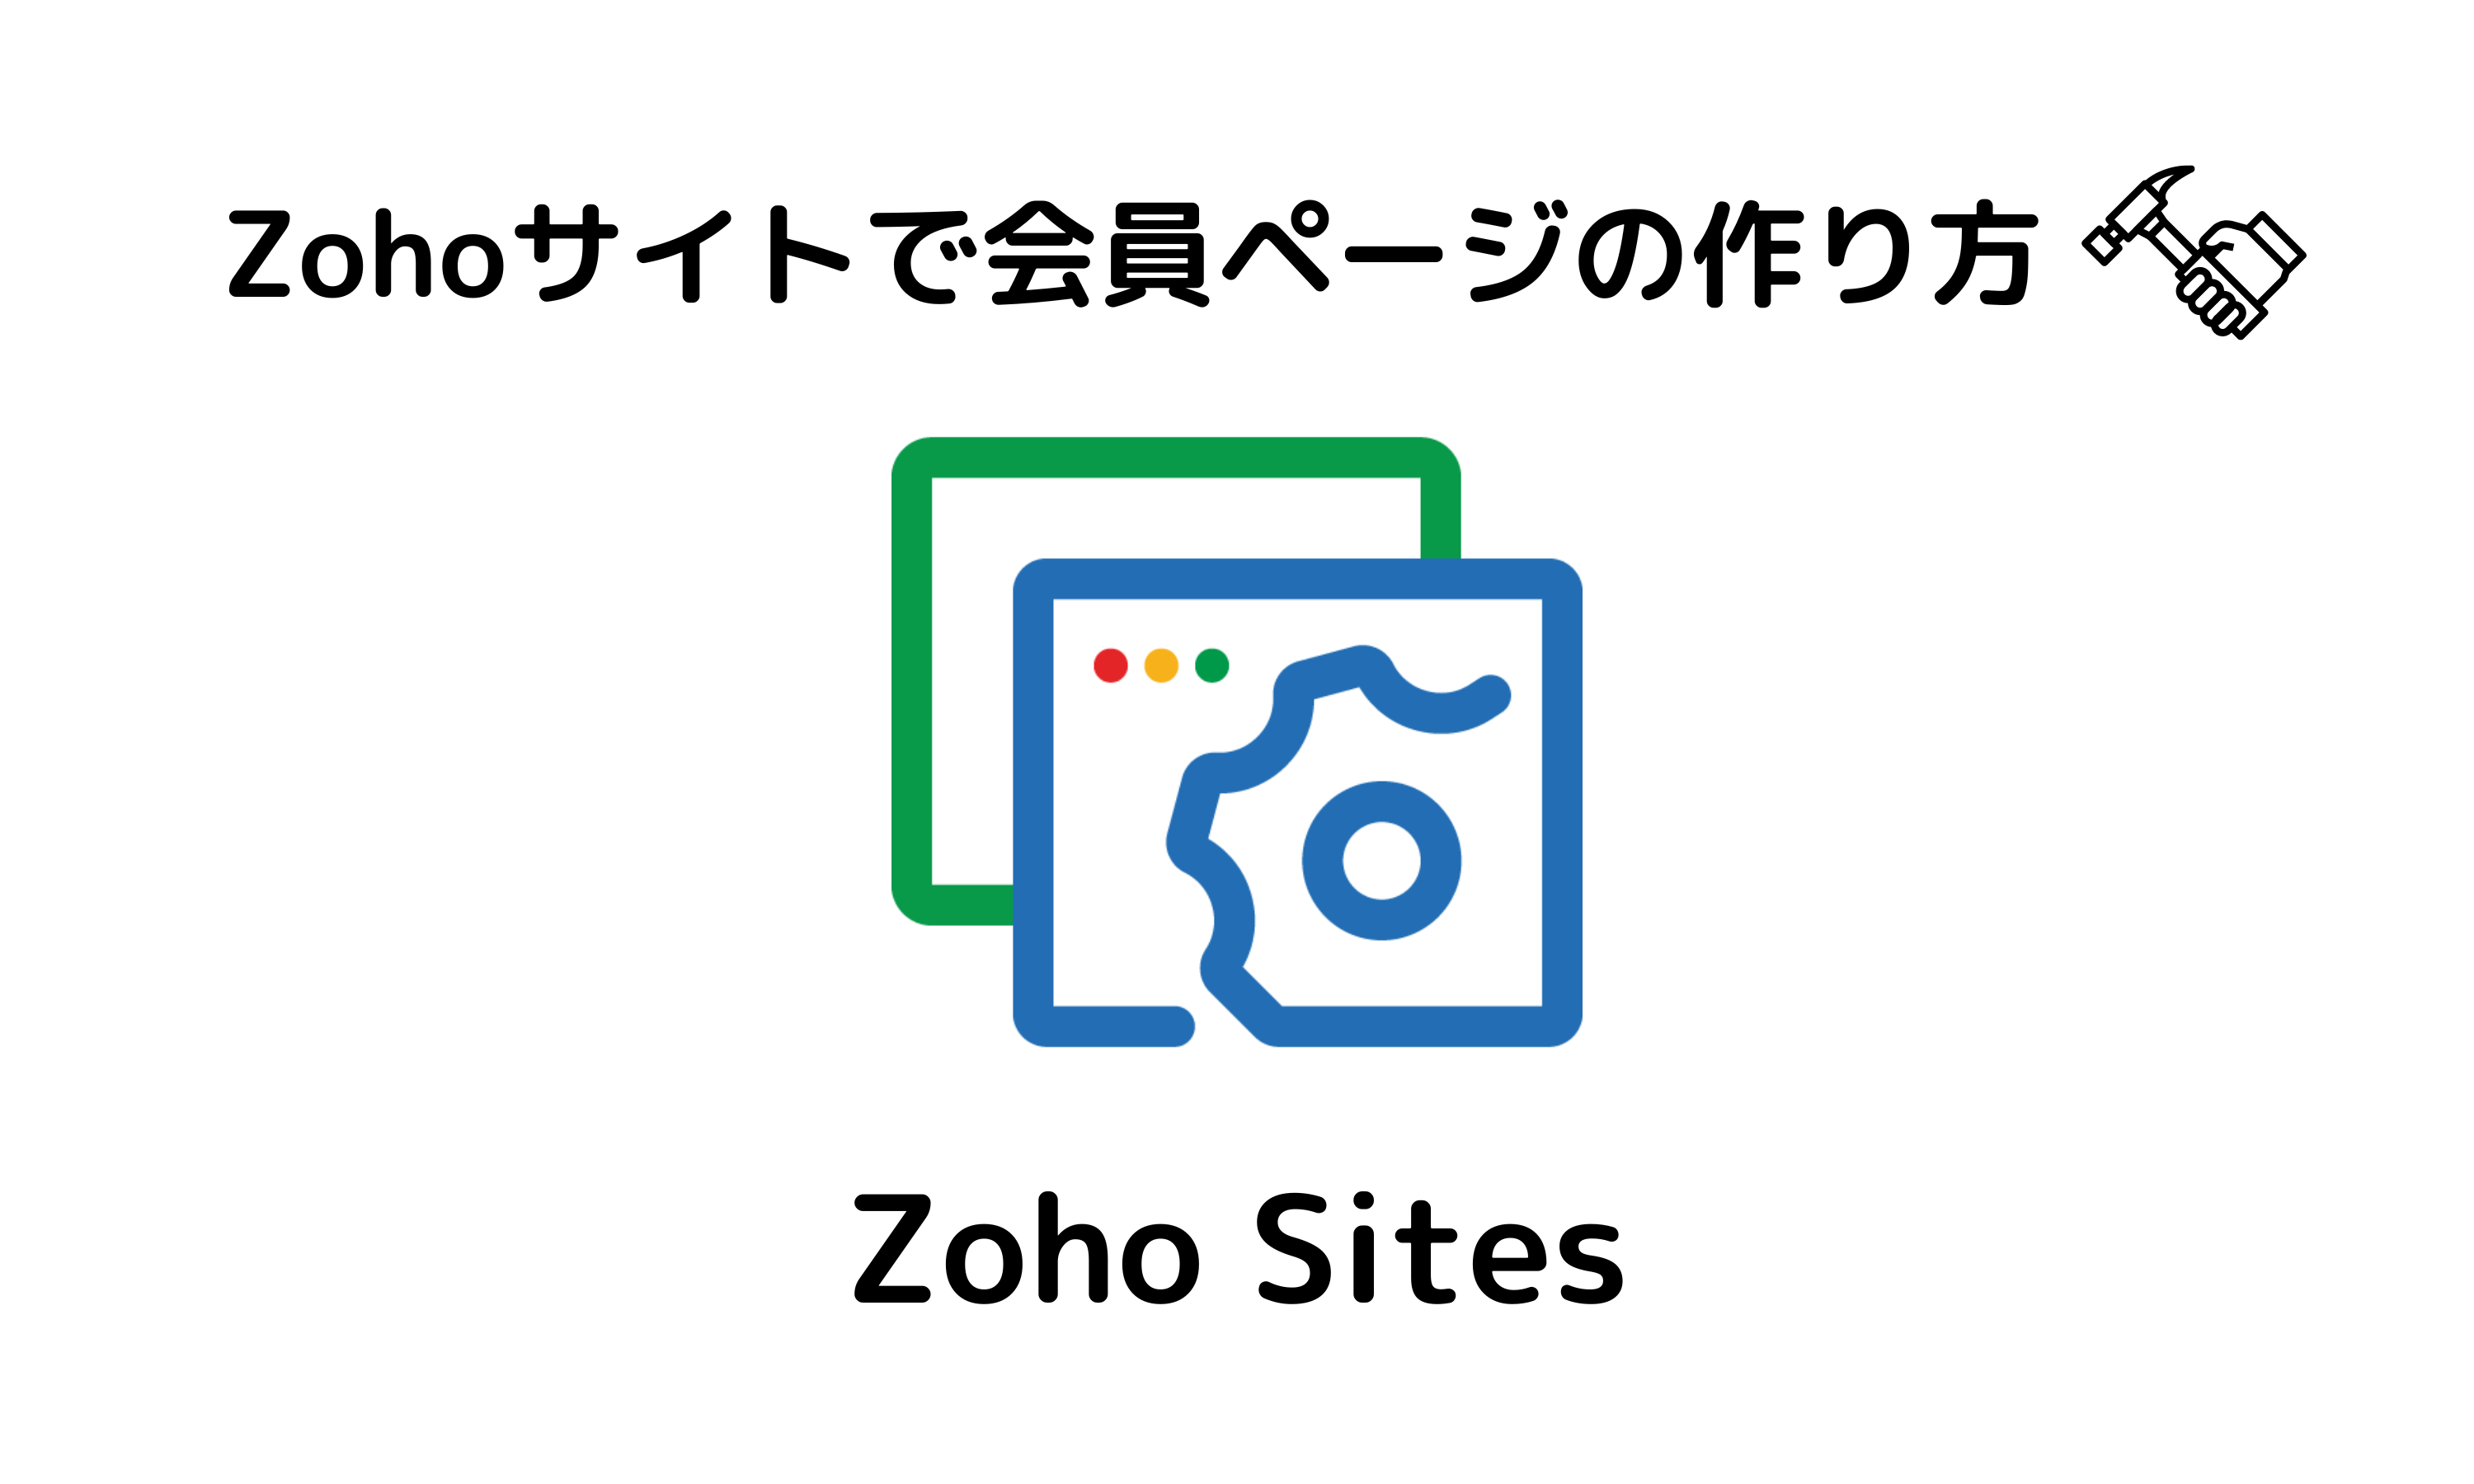 Zoho Sites (3000 × 1800 px)